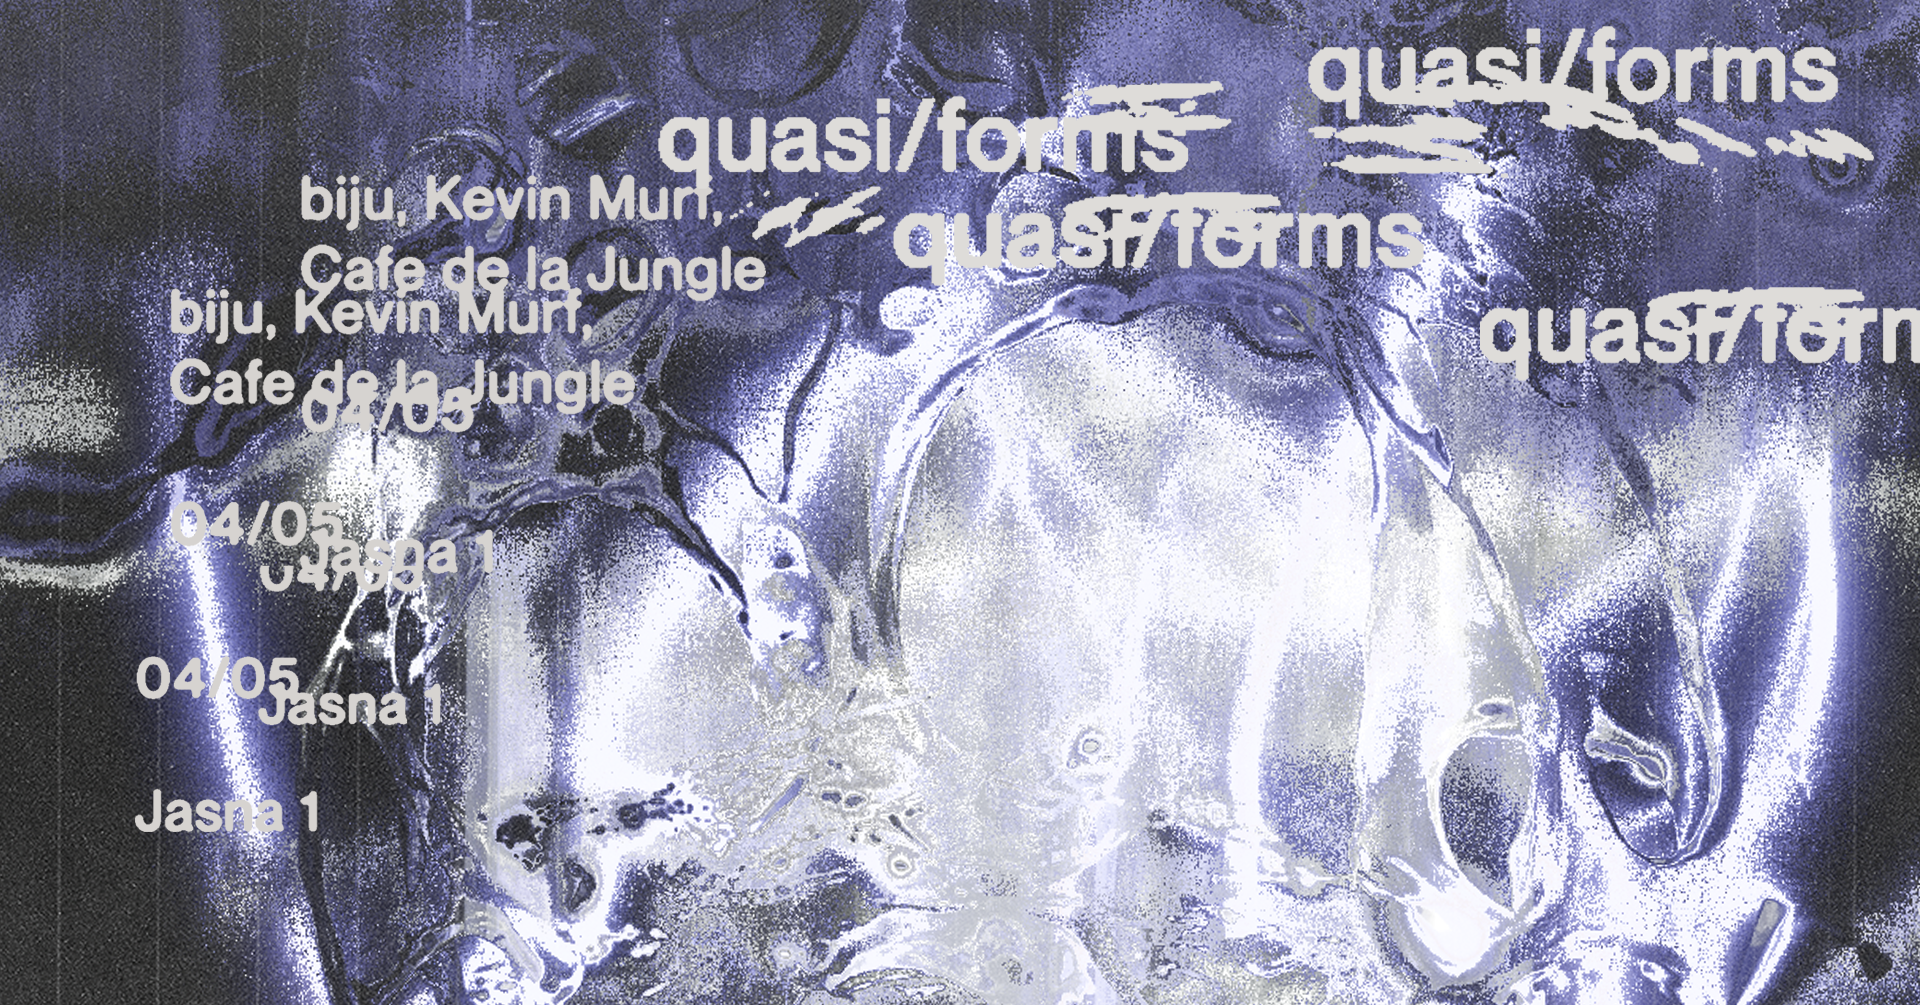 J1 - quasi/forms: bijū, Cafe de la jungle, Kevin Murf - フライヤー表